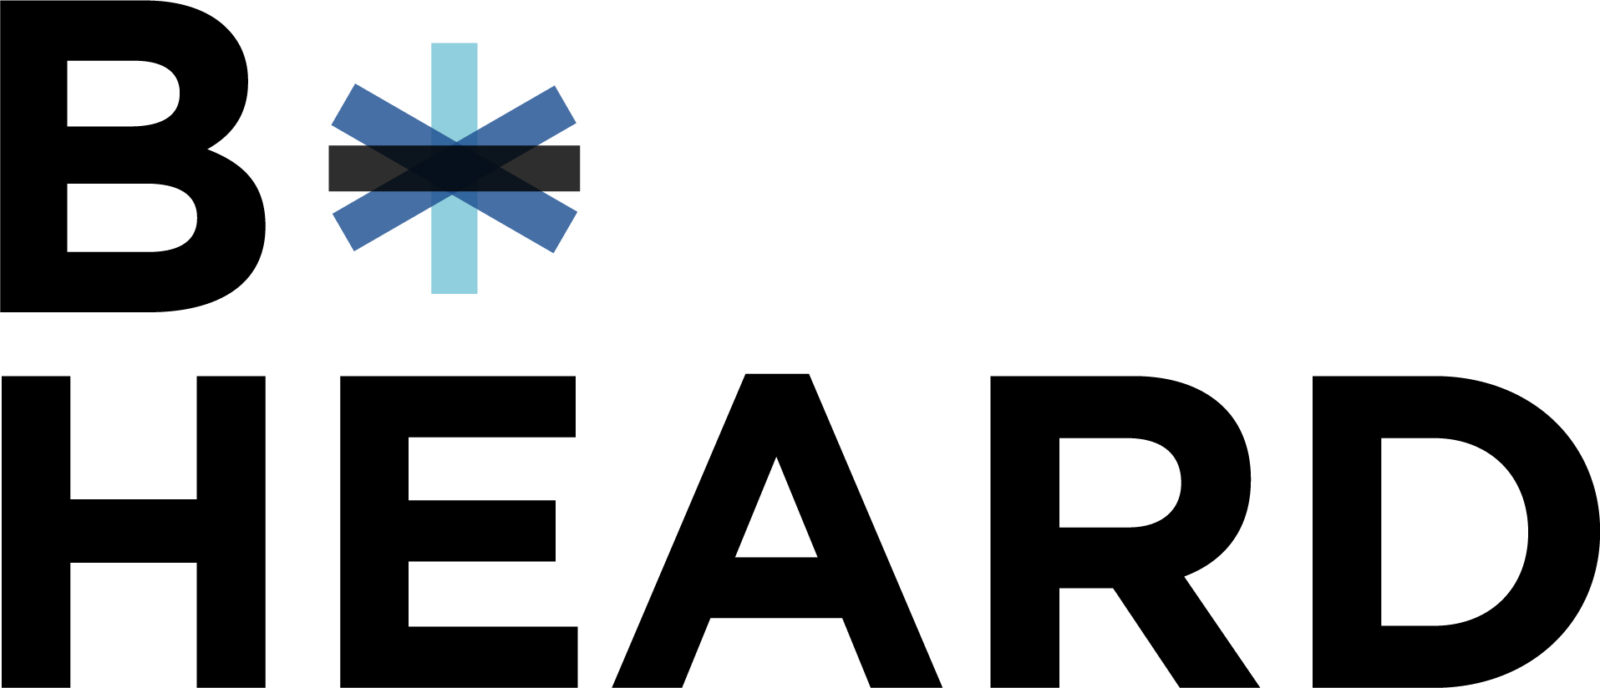 the right response directory - B-HEARD-Logo